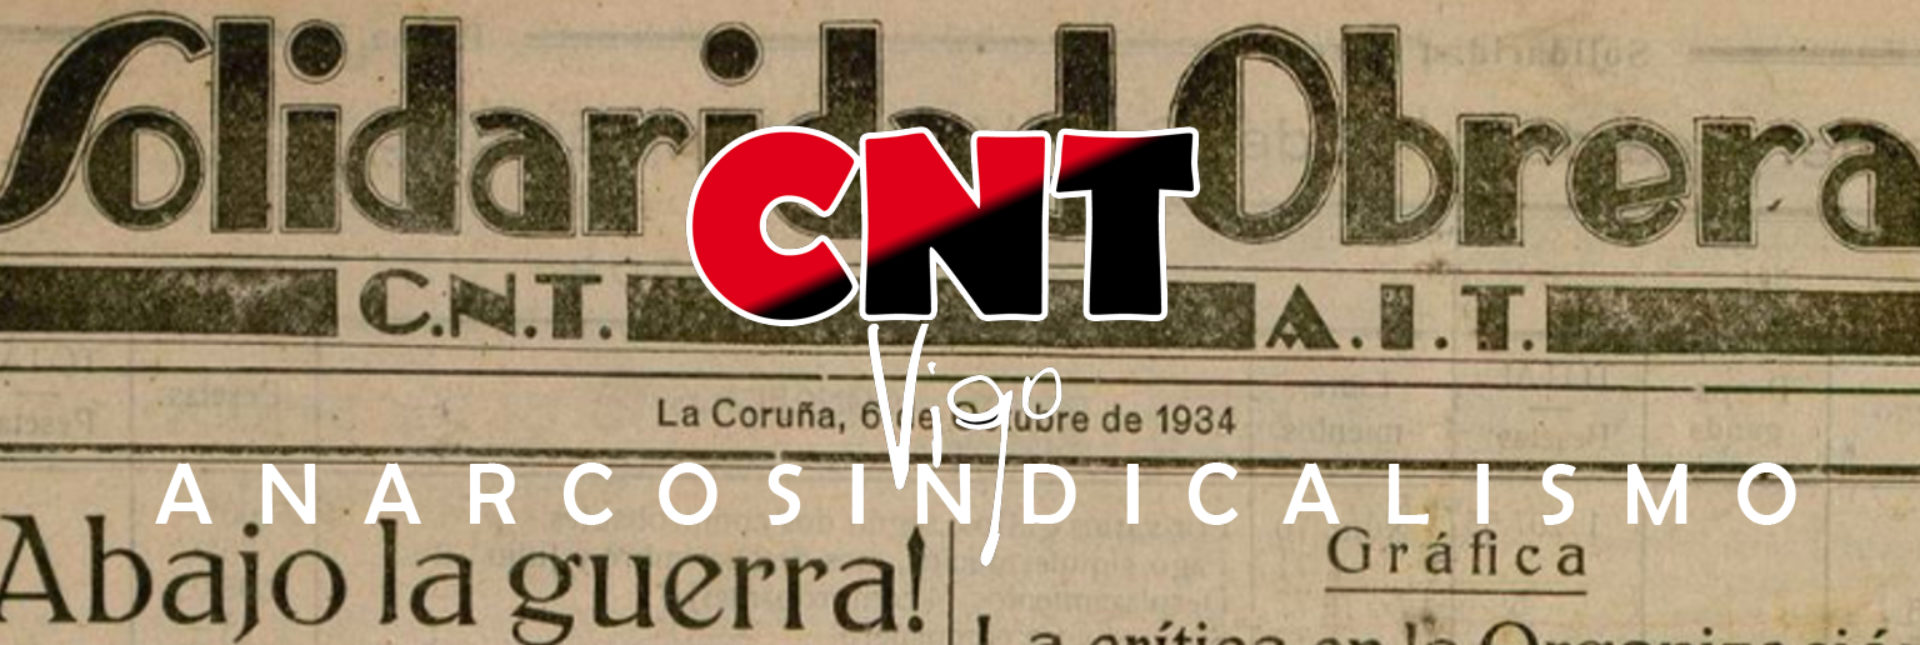 CNT-VIGO